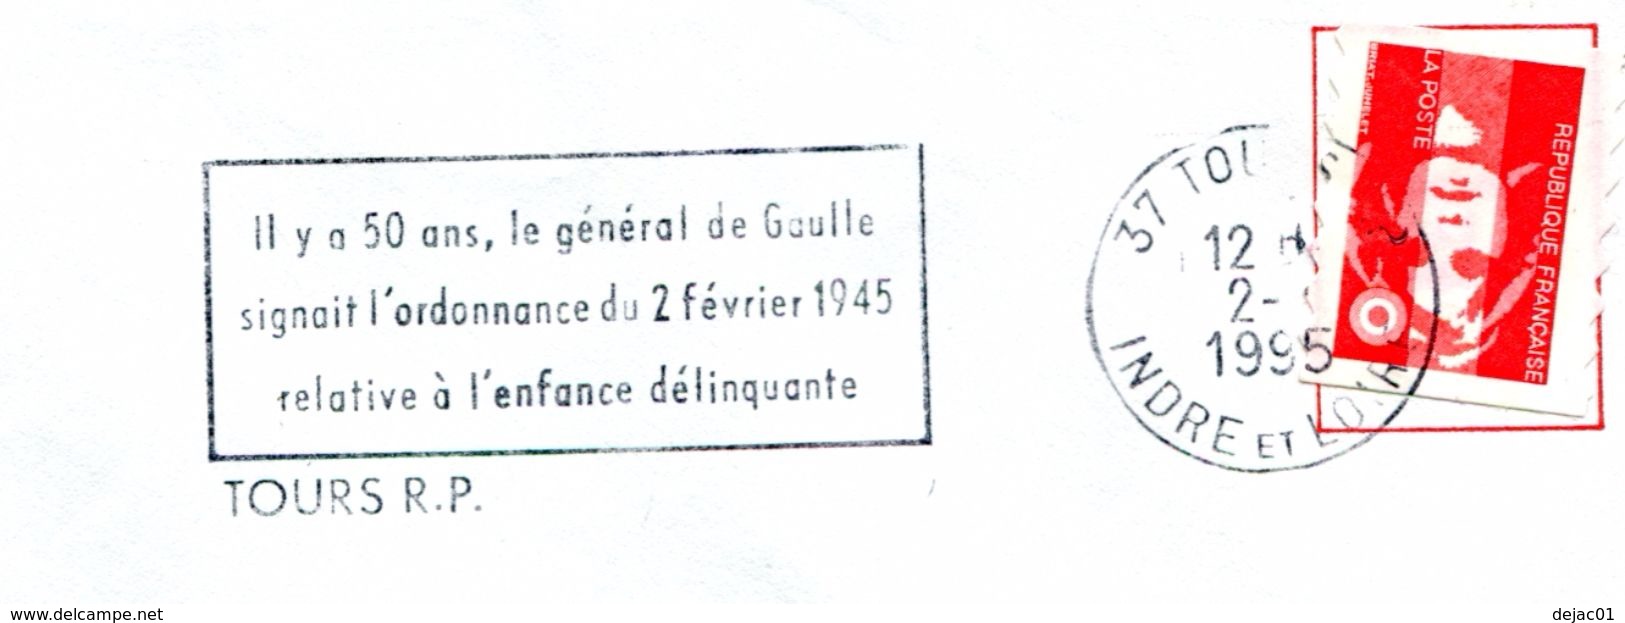 Thème Général De Gaulle - Flamme De Tours - Ordonnance  Sur L'enfance Déliquante - R4279 - De Gaulle (Generale)